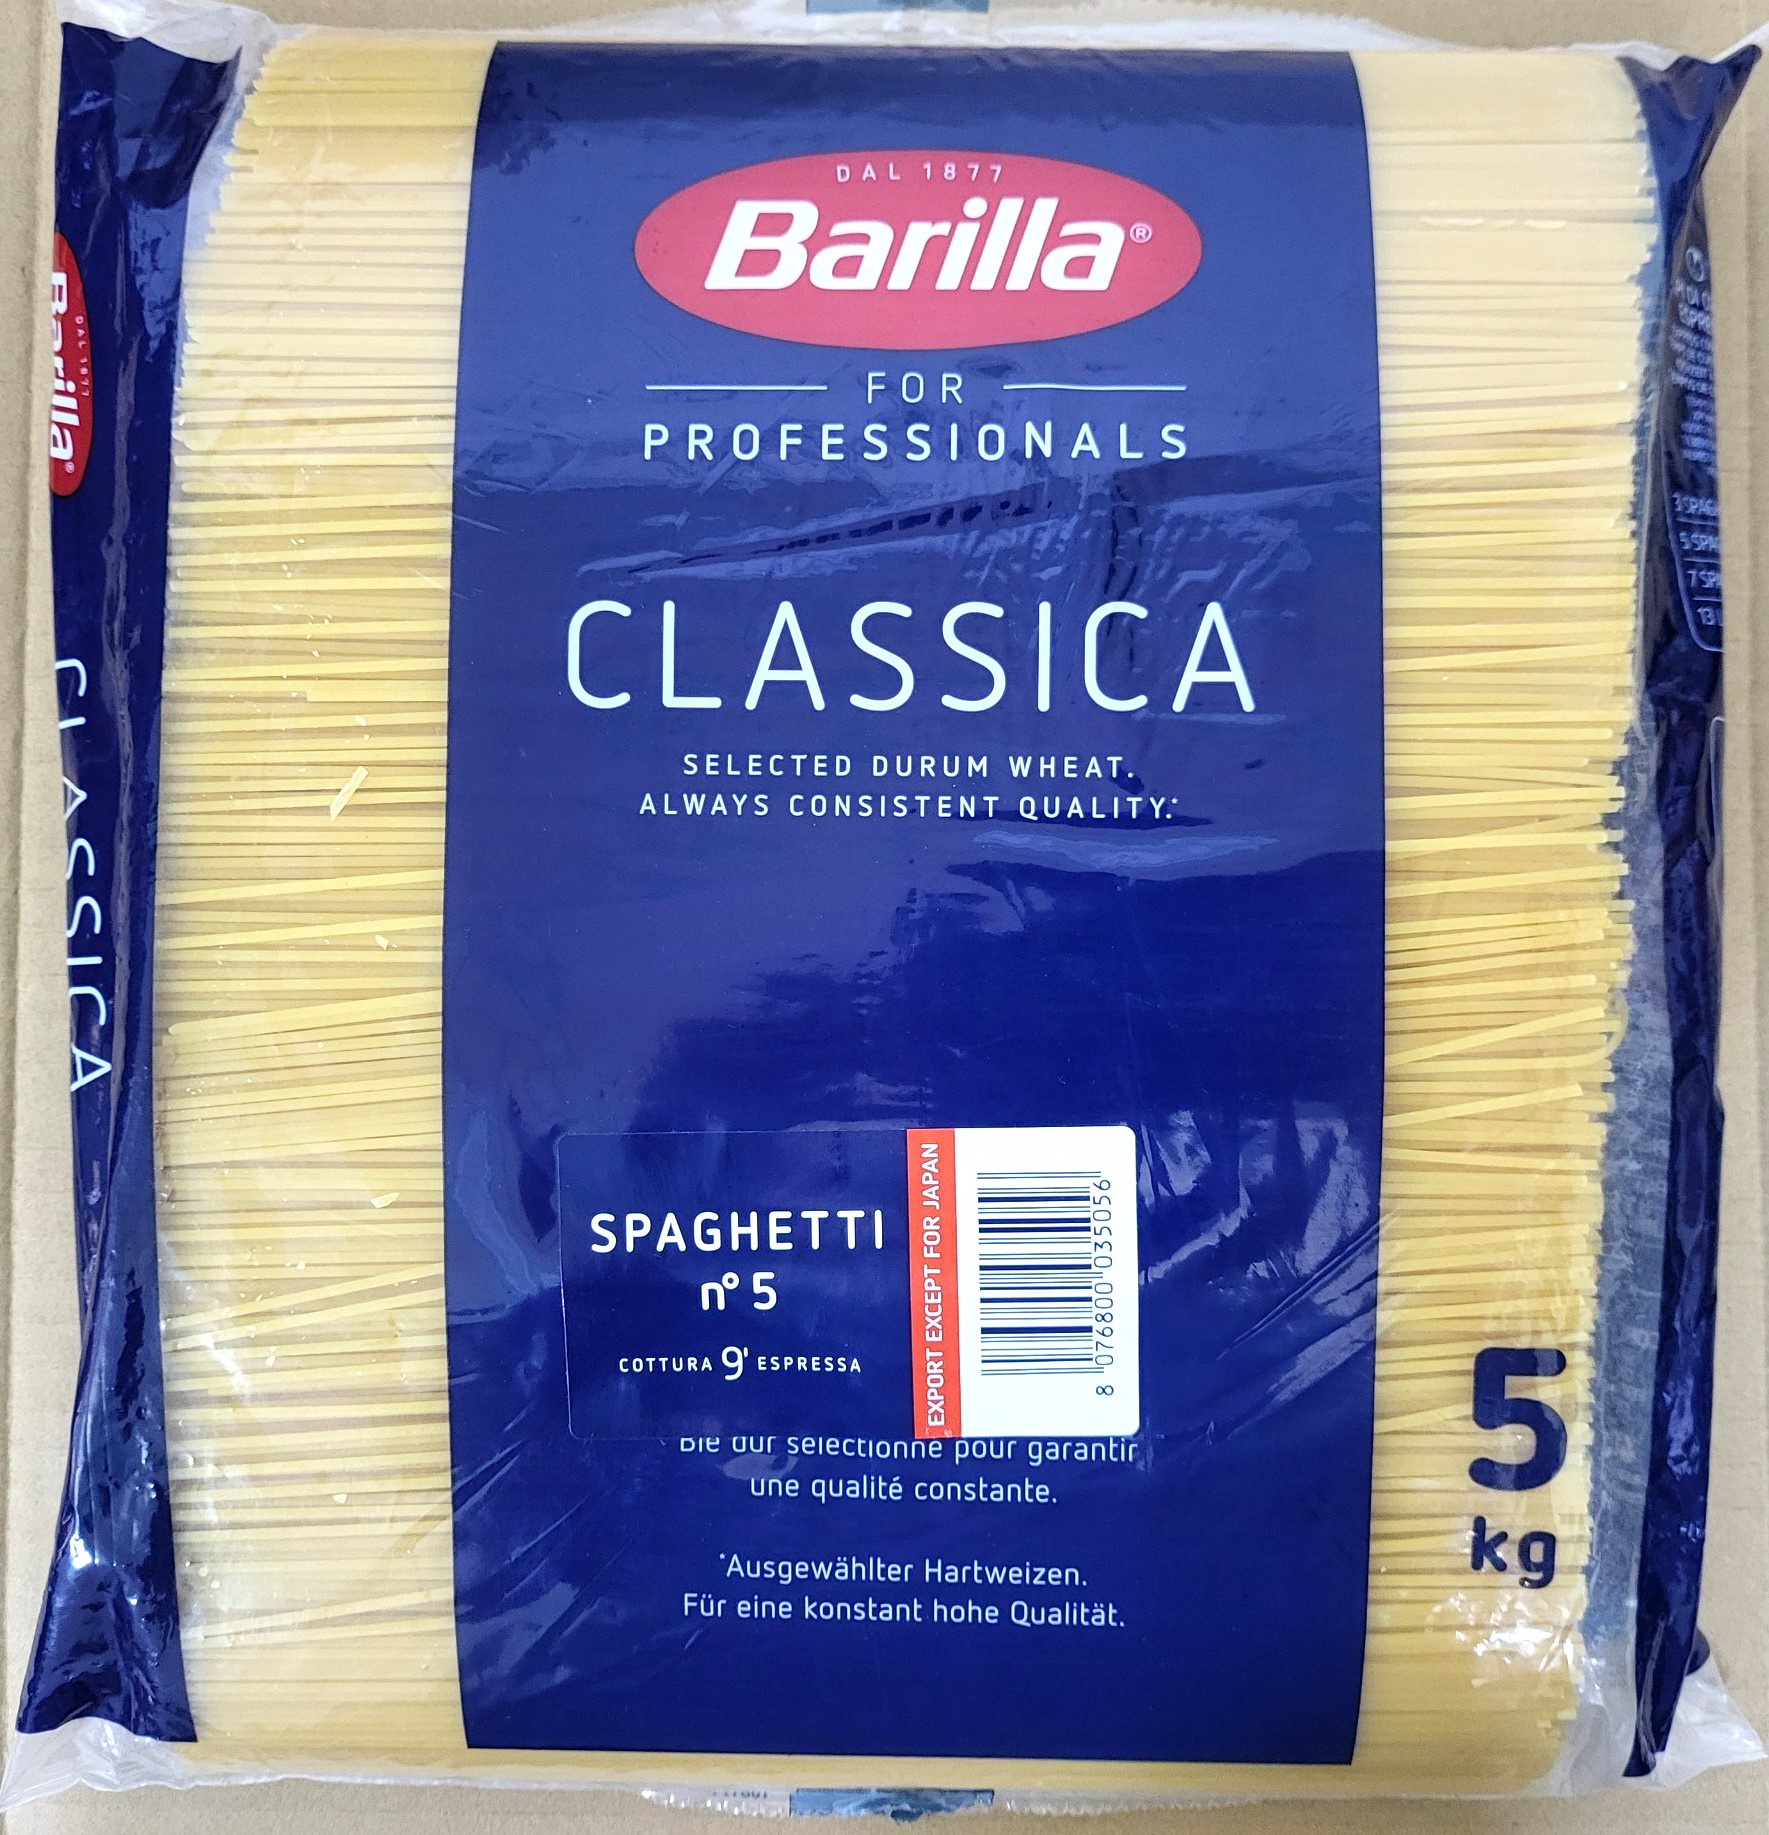 TÚI LỚN 5 Kg SỐ 5 - MÌ SỢI HÌNH ỐNG CÁC CỠ Ý BARILLA No 5 Spaghetti Pasta